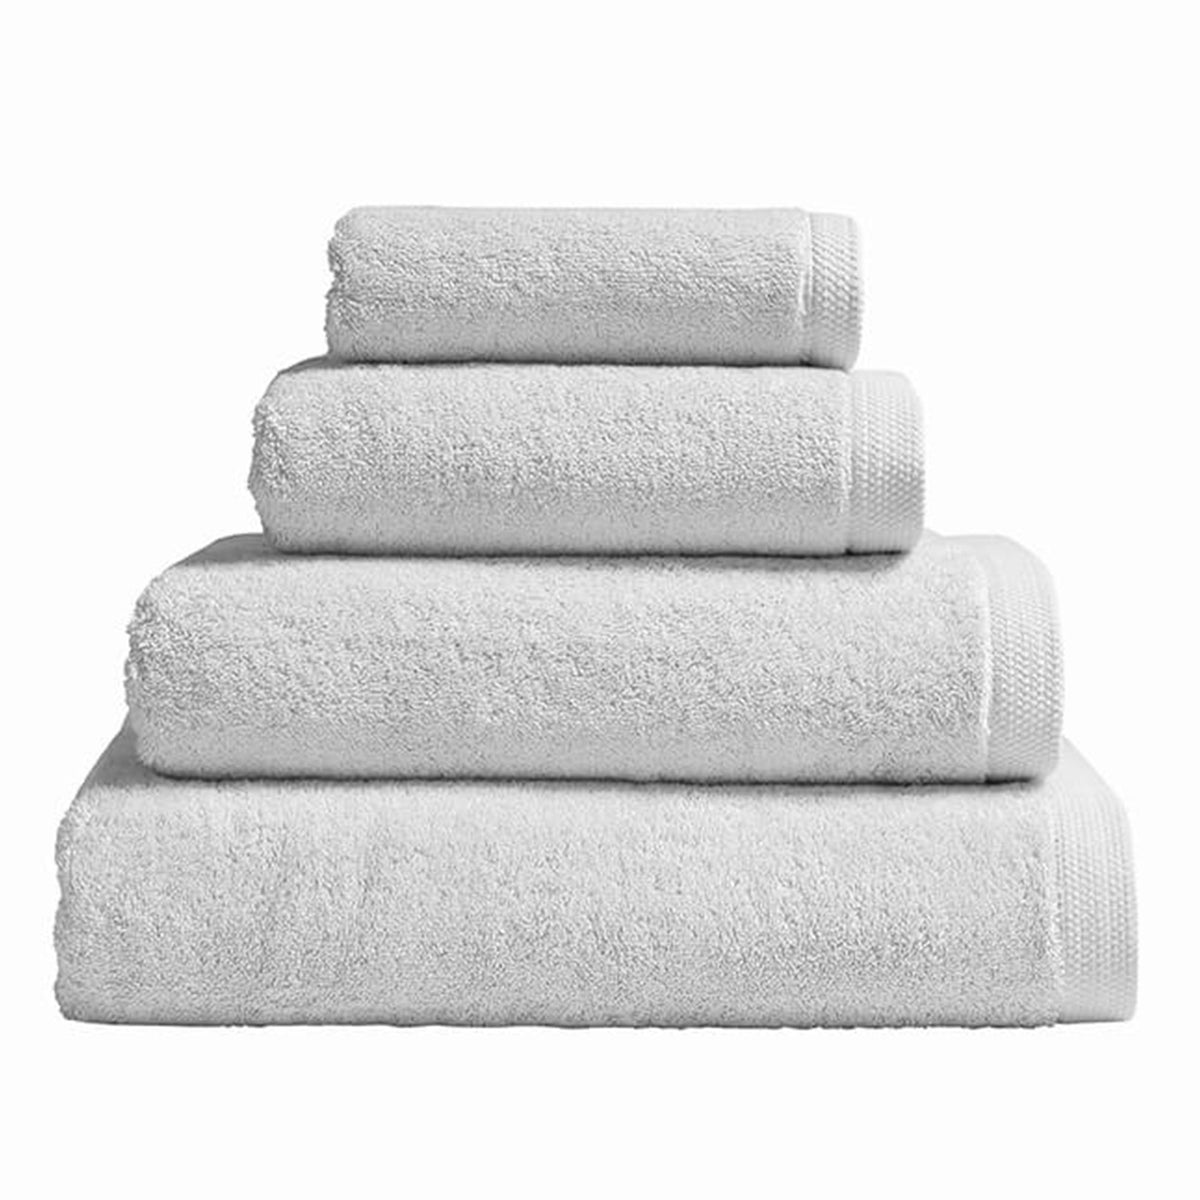 fig linens - alexandre turpault bath towels - light grey essentiel towels - pile